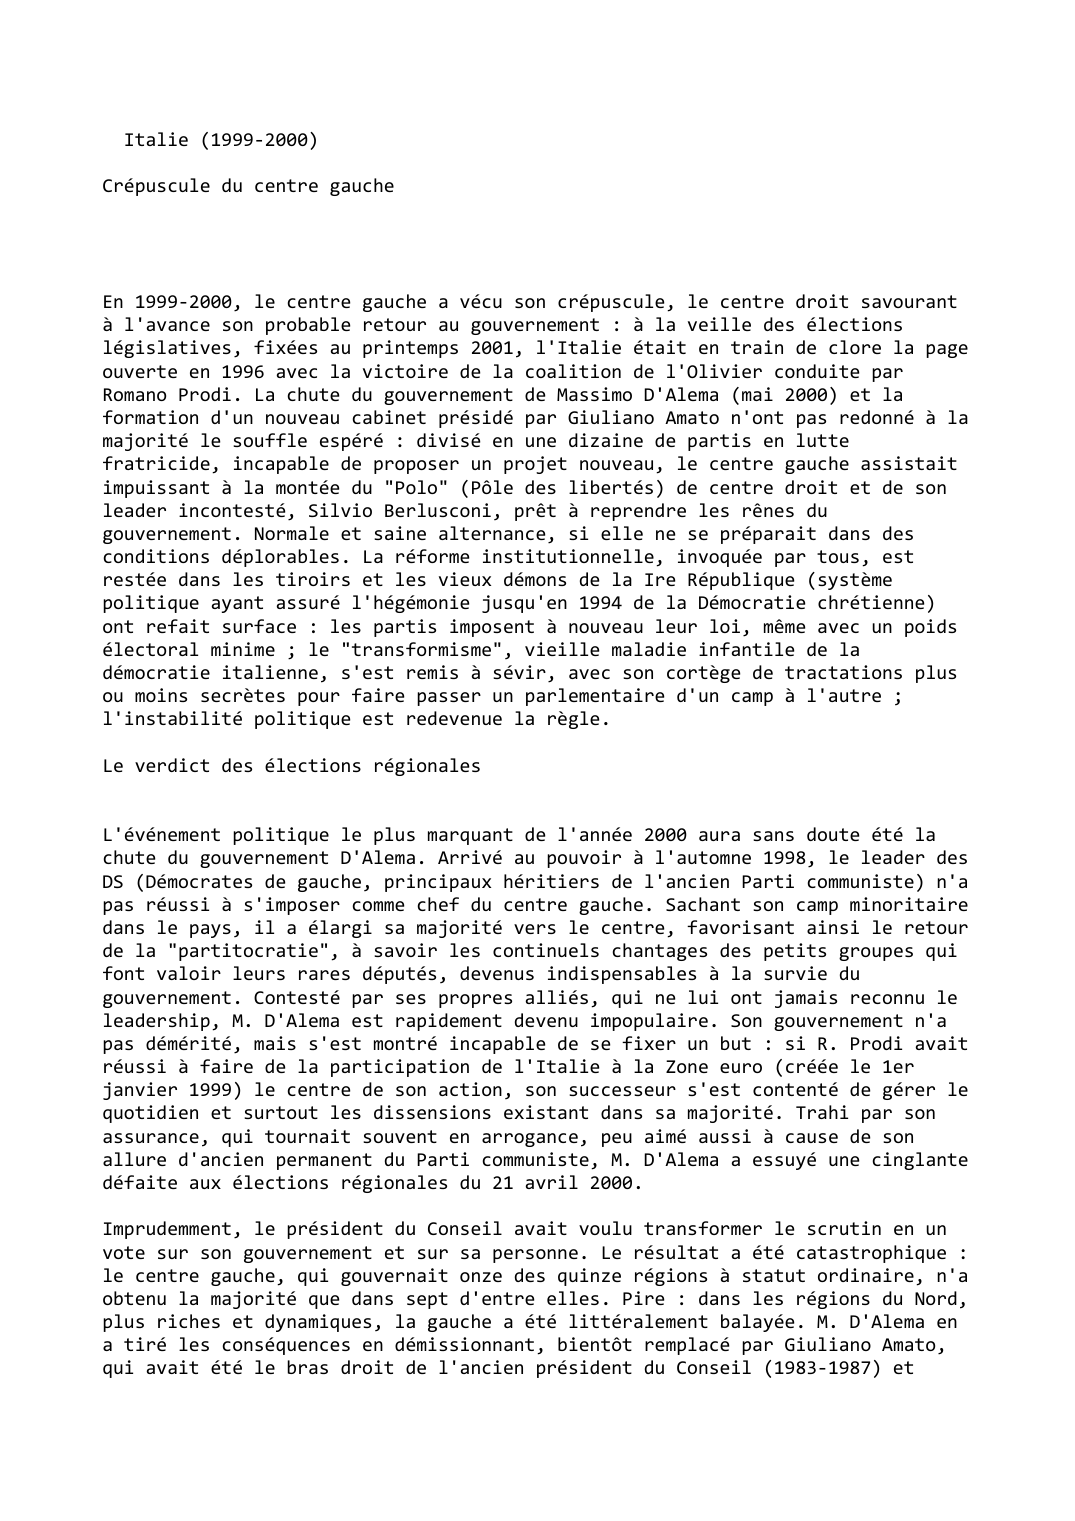 Prévisualisation du document Italie (1999-2000)

Crépuscule du centre gauche